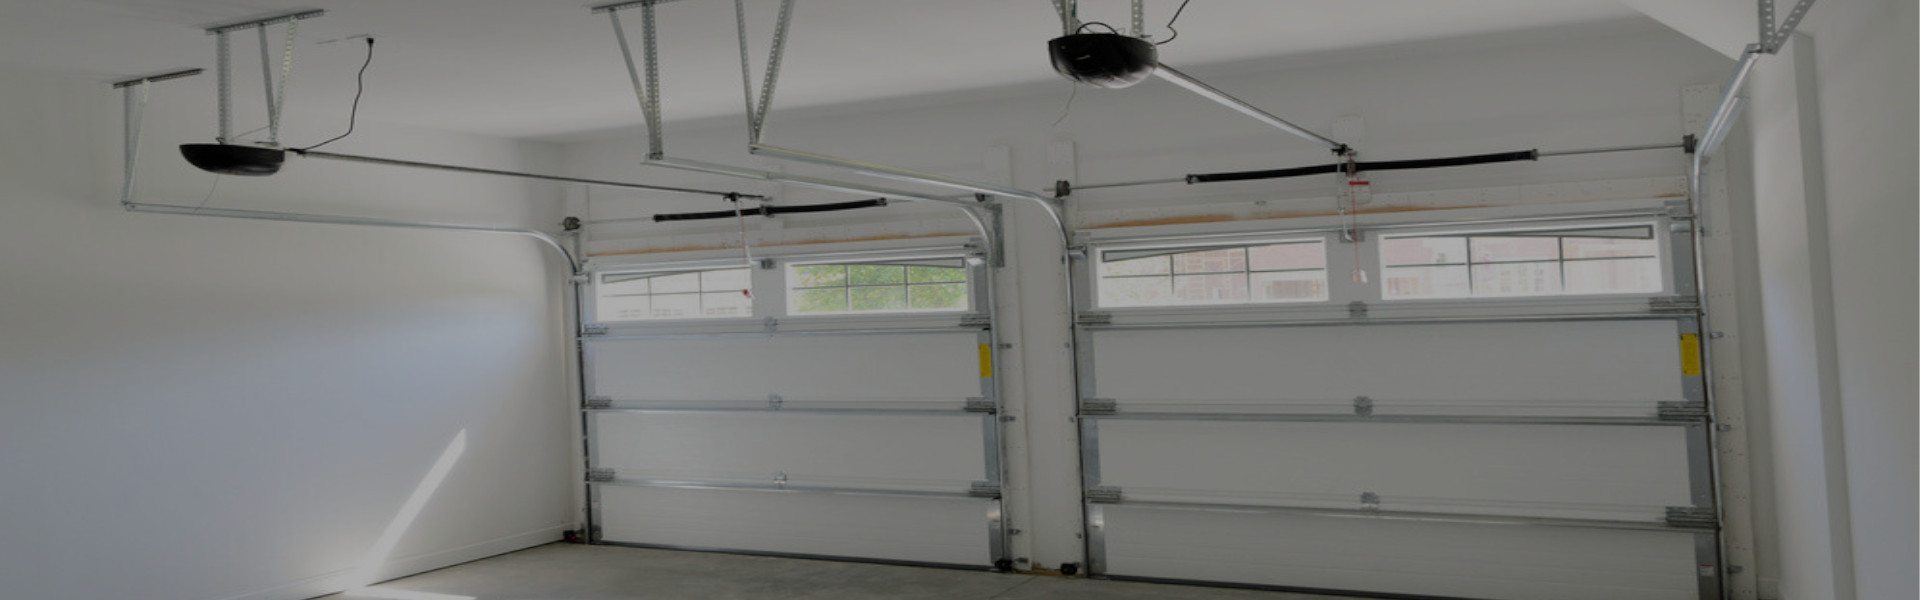 Slider Garage Door Repair, Glaziers in Forest Hill, SE23